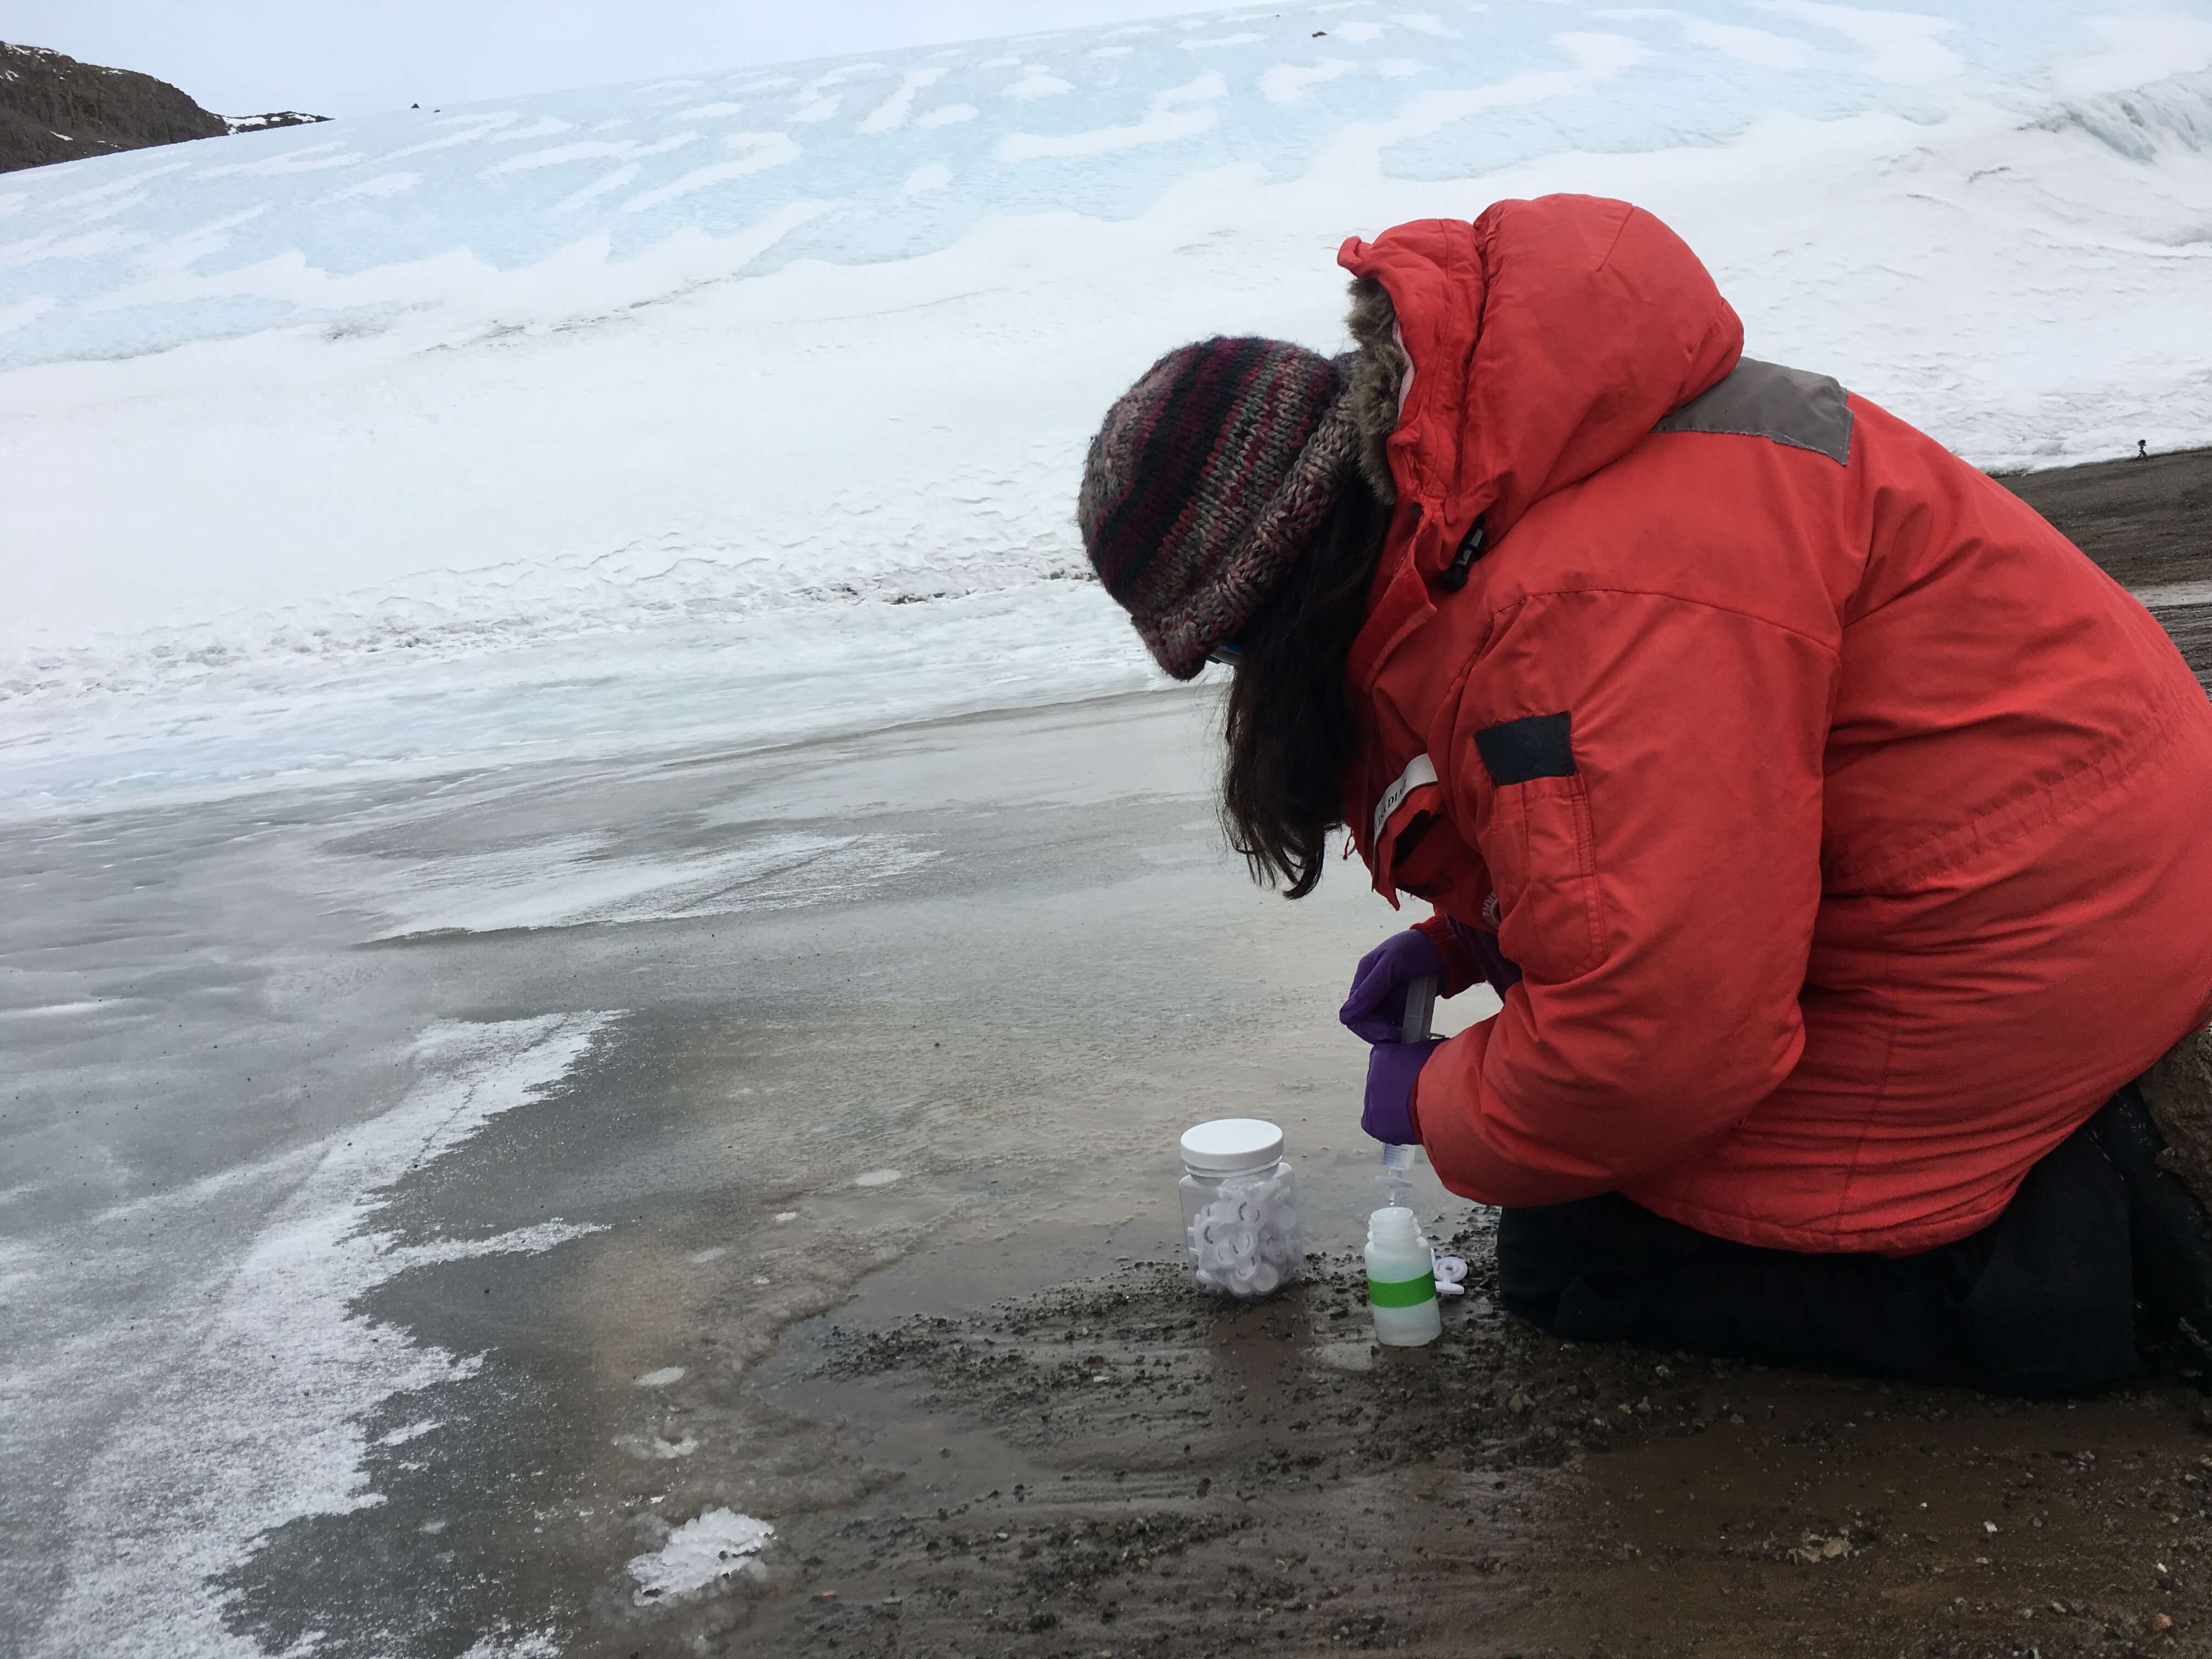 Melisa Diaz collecting samples in Antarctica